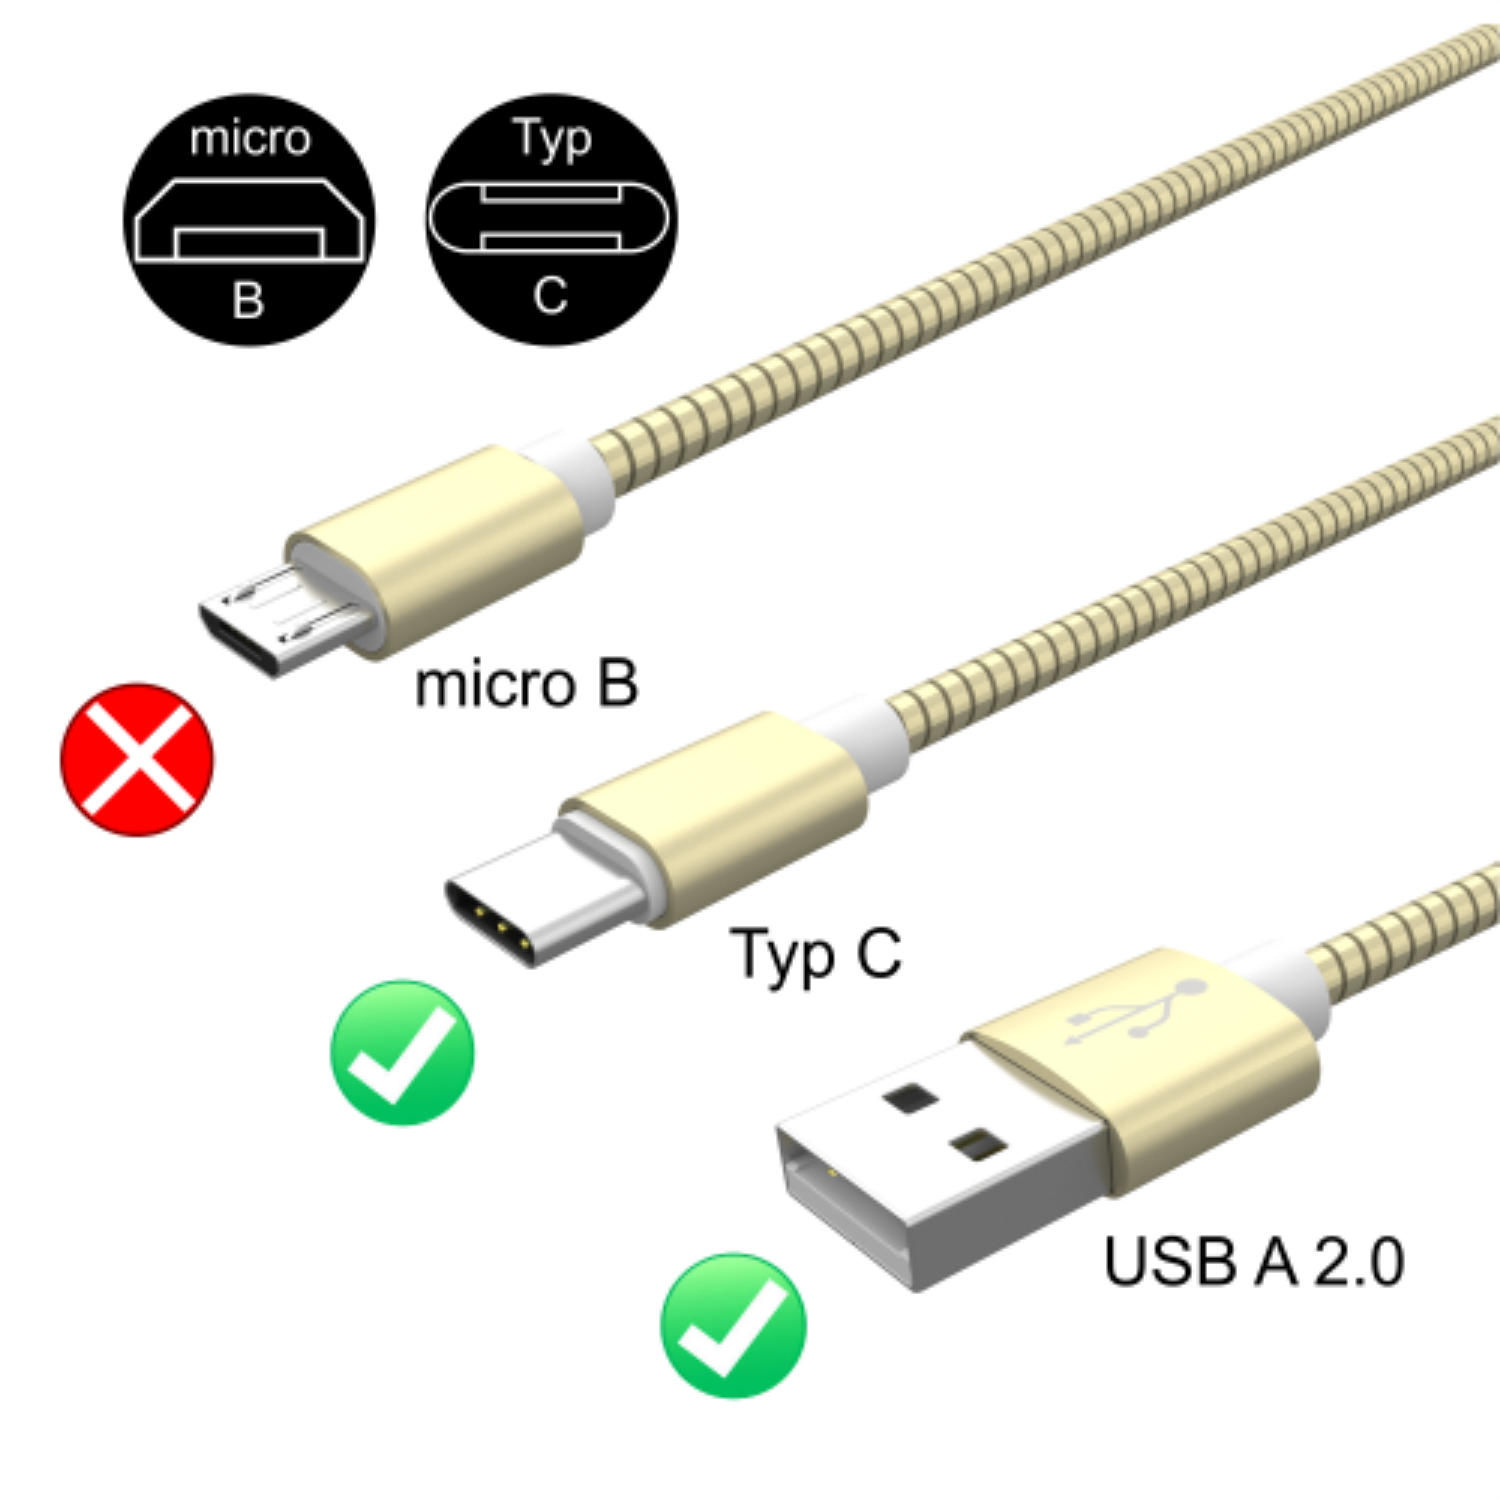 A, USB Gold USB 1,0m zu Kabel Edelstahl C USB AIXONTEC 2x